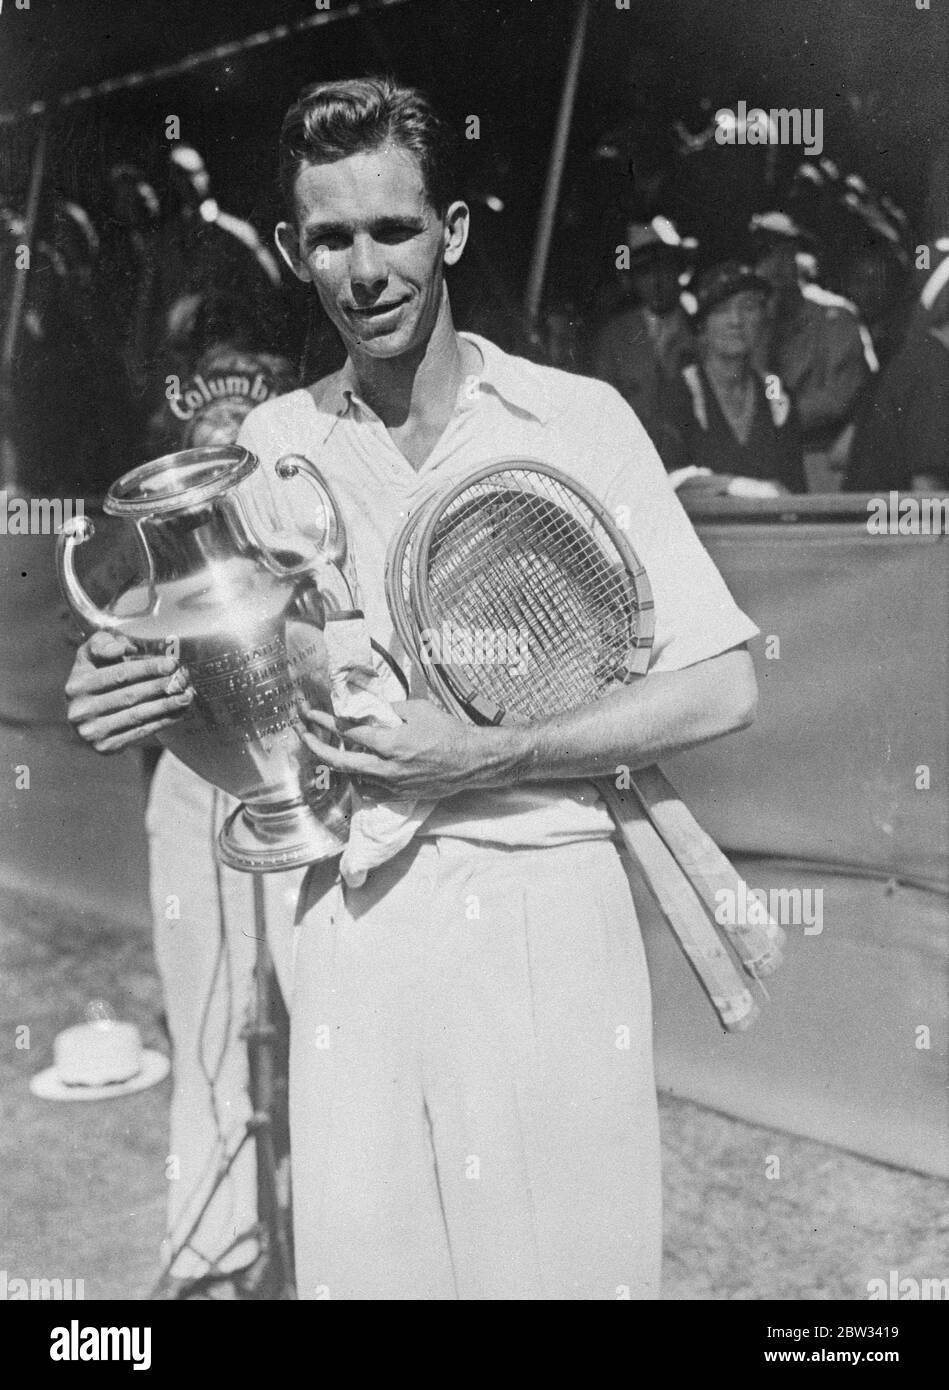 Vines vince il campionato americano di tennis single . Ellsworth Vines ha vinto il campionato nazionale americano di singoli sconfiggendo Henri Cochet di Francia nella finale al West Side Tennis Club Forest Hills , Long Island , New York , 6-4 ; 6-4; 6-4 . Viti con la coppa del campionato dopo la sua vittoria . 18 settembre 1932 Foto Stock